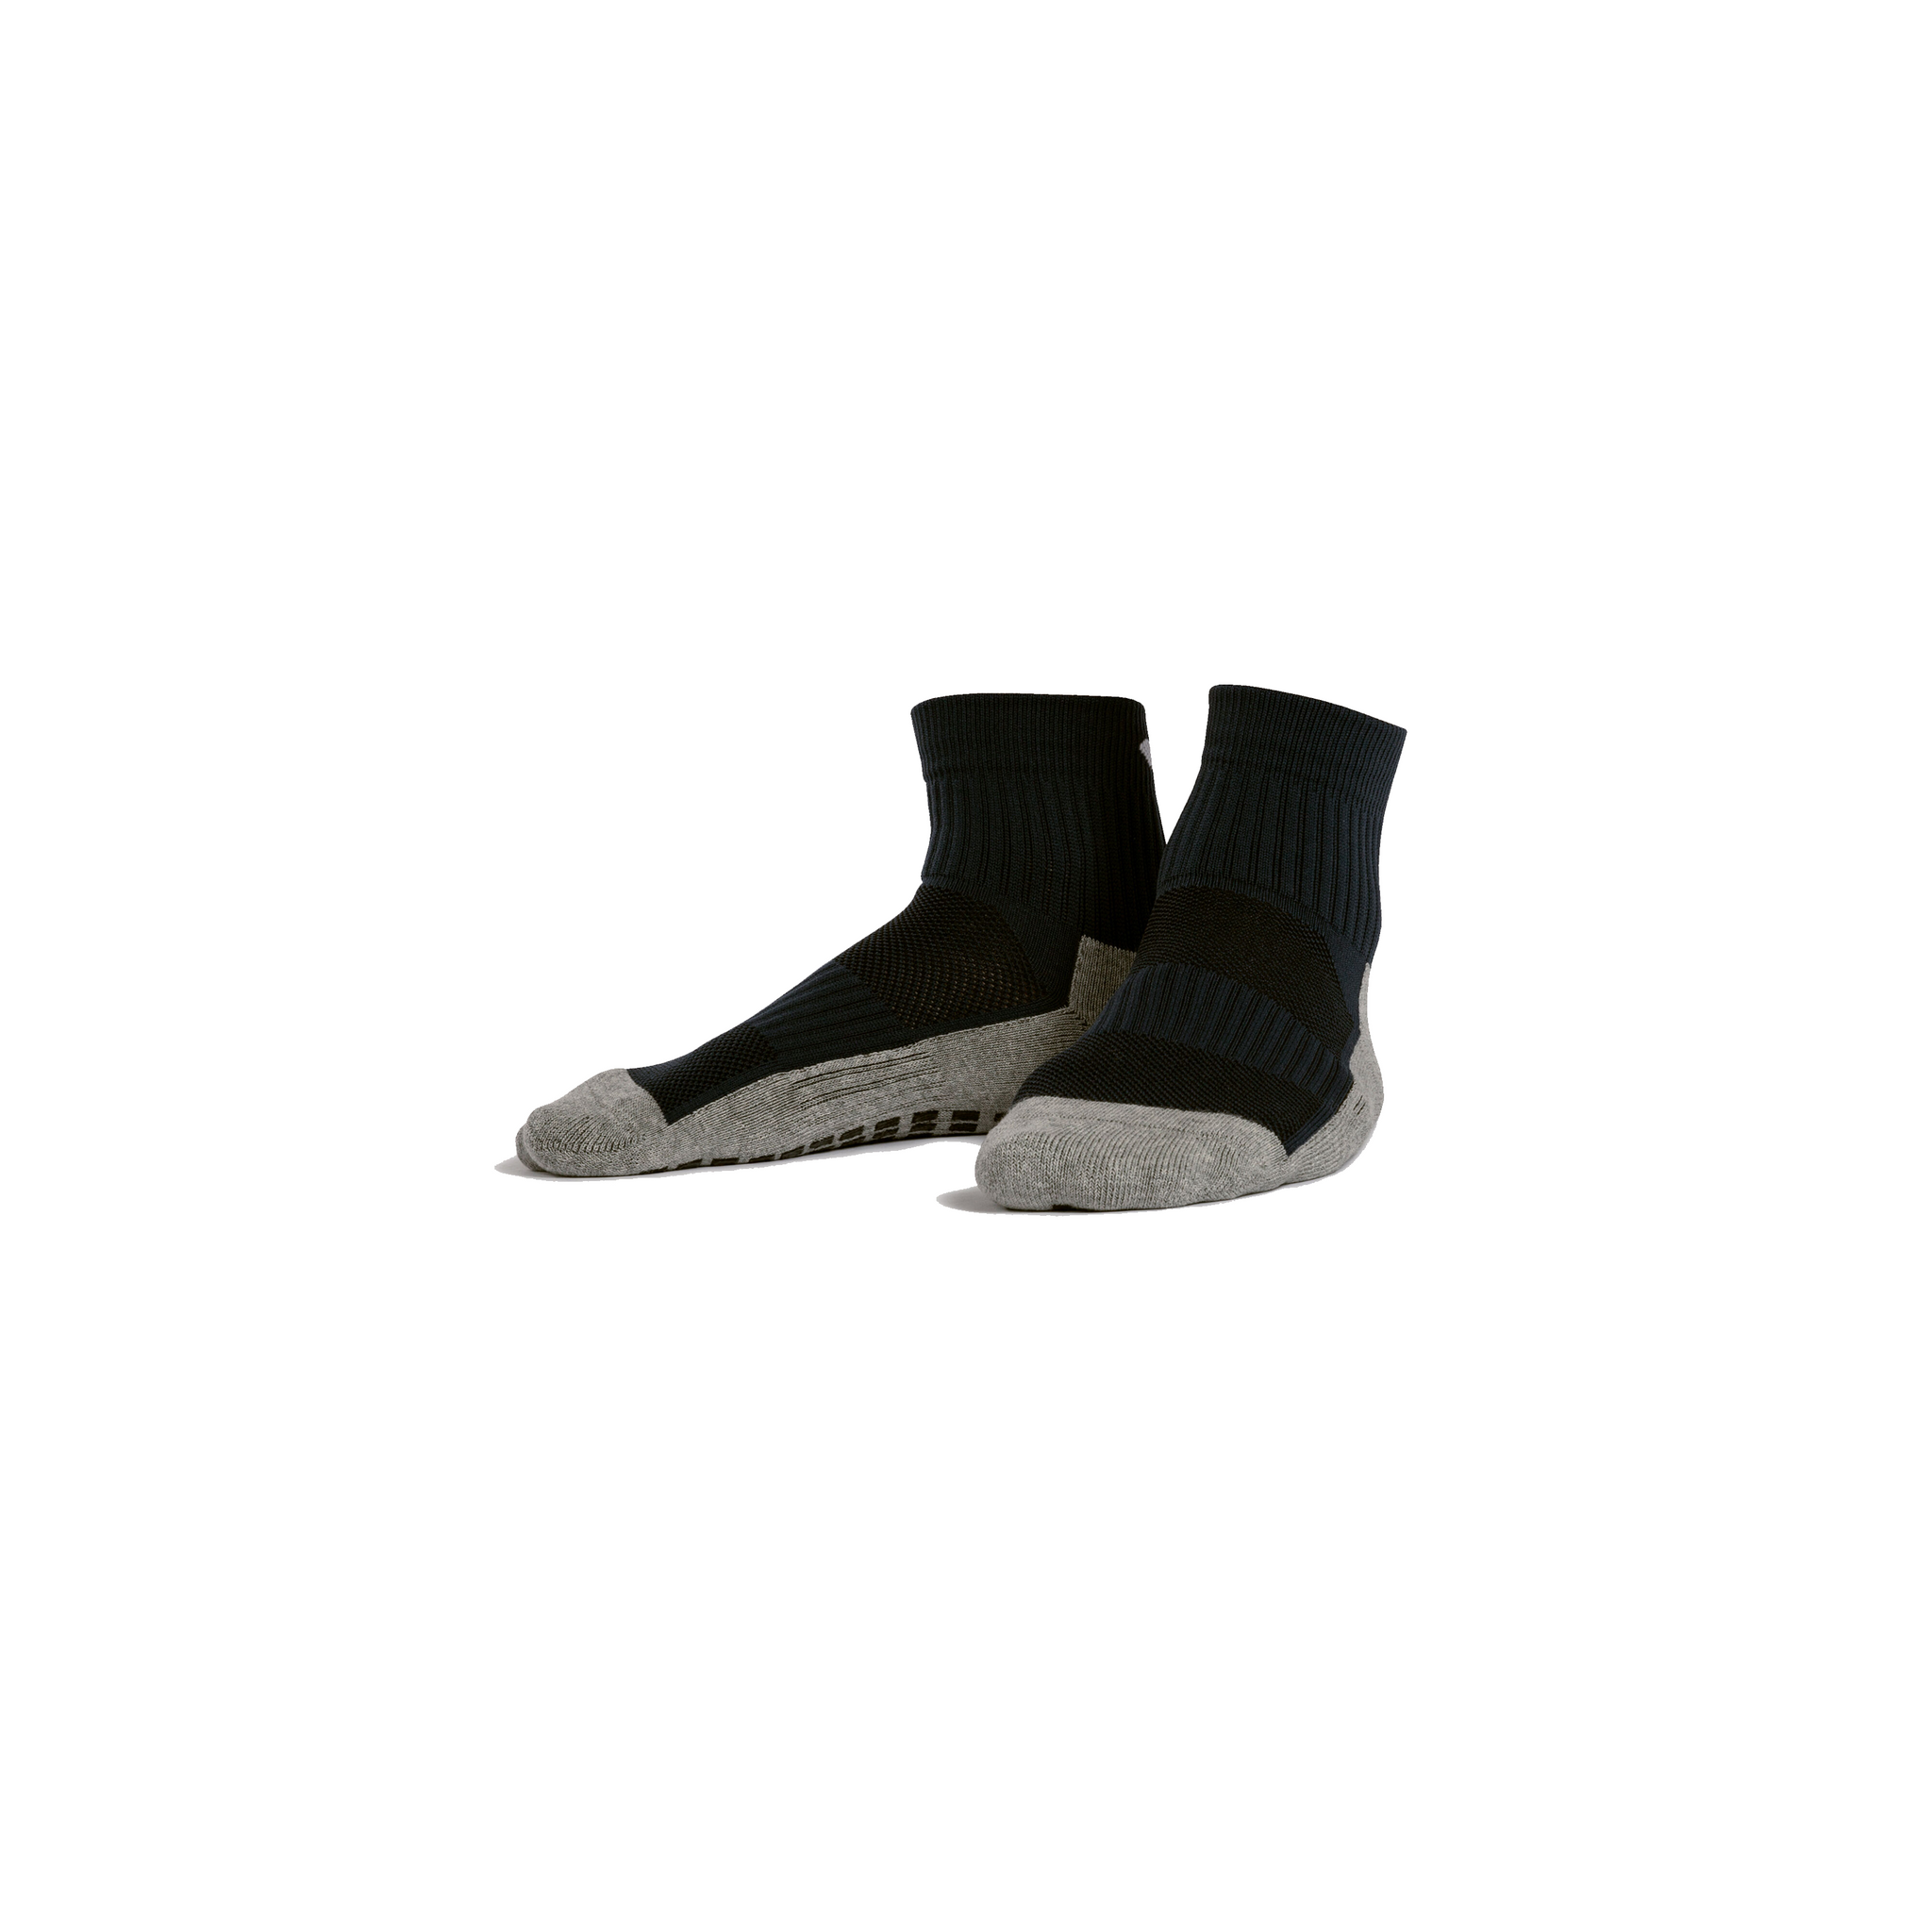 JOMA Short Anti Slip Socks (Black)